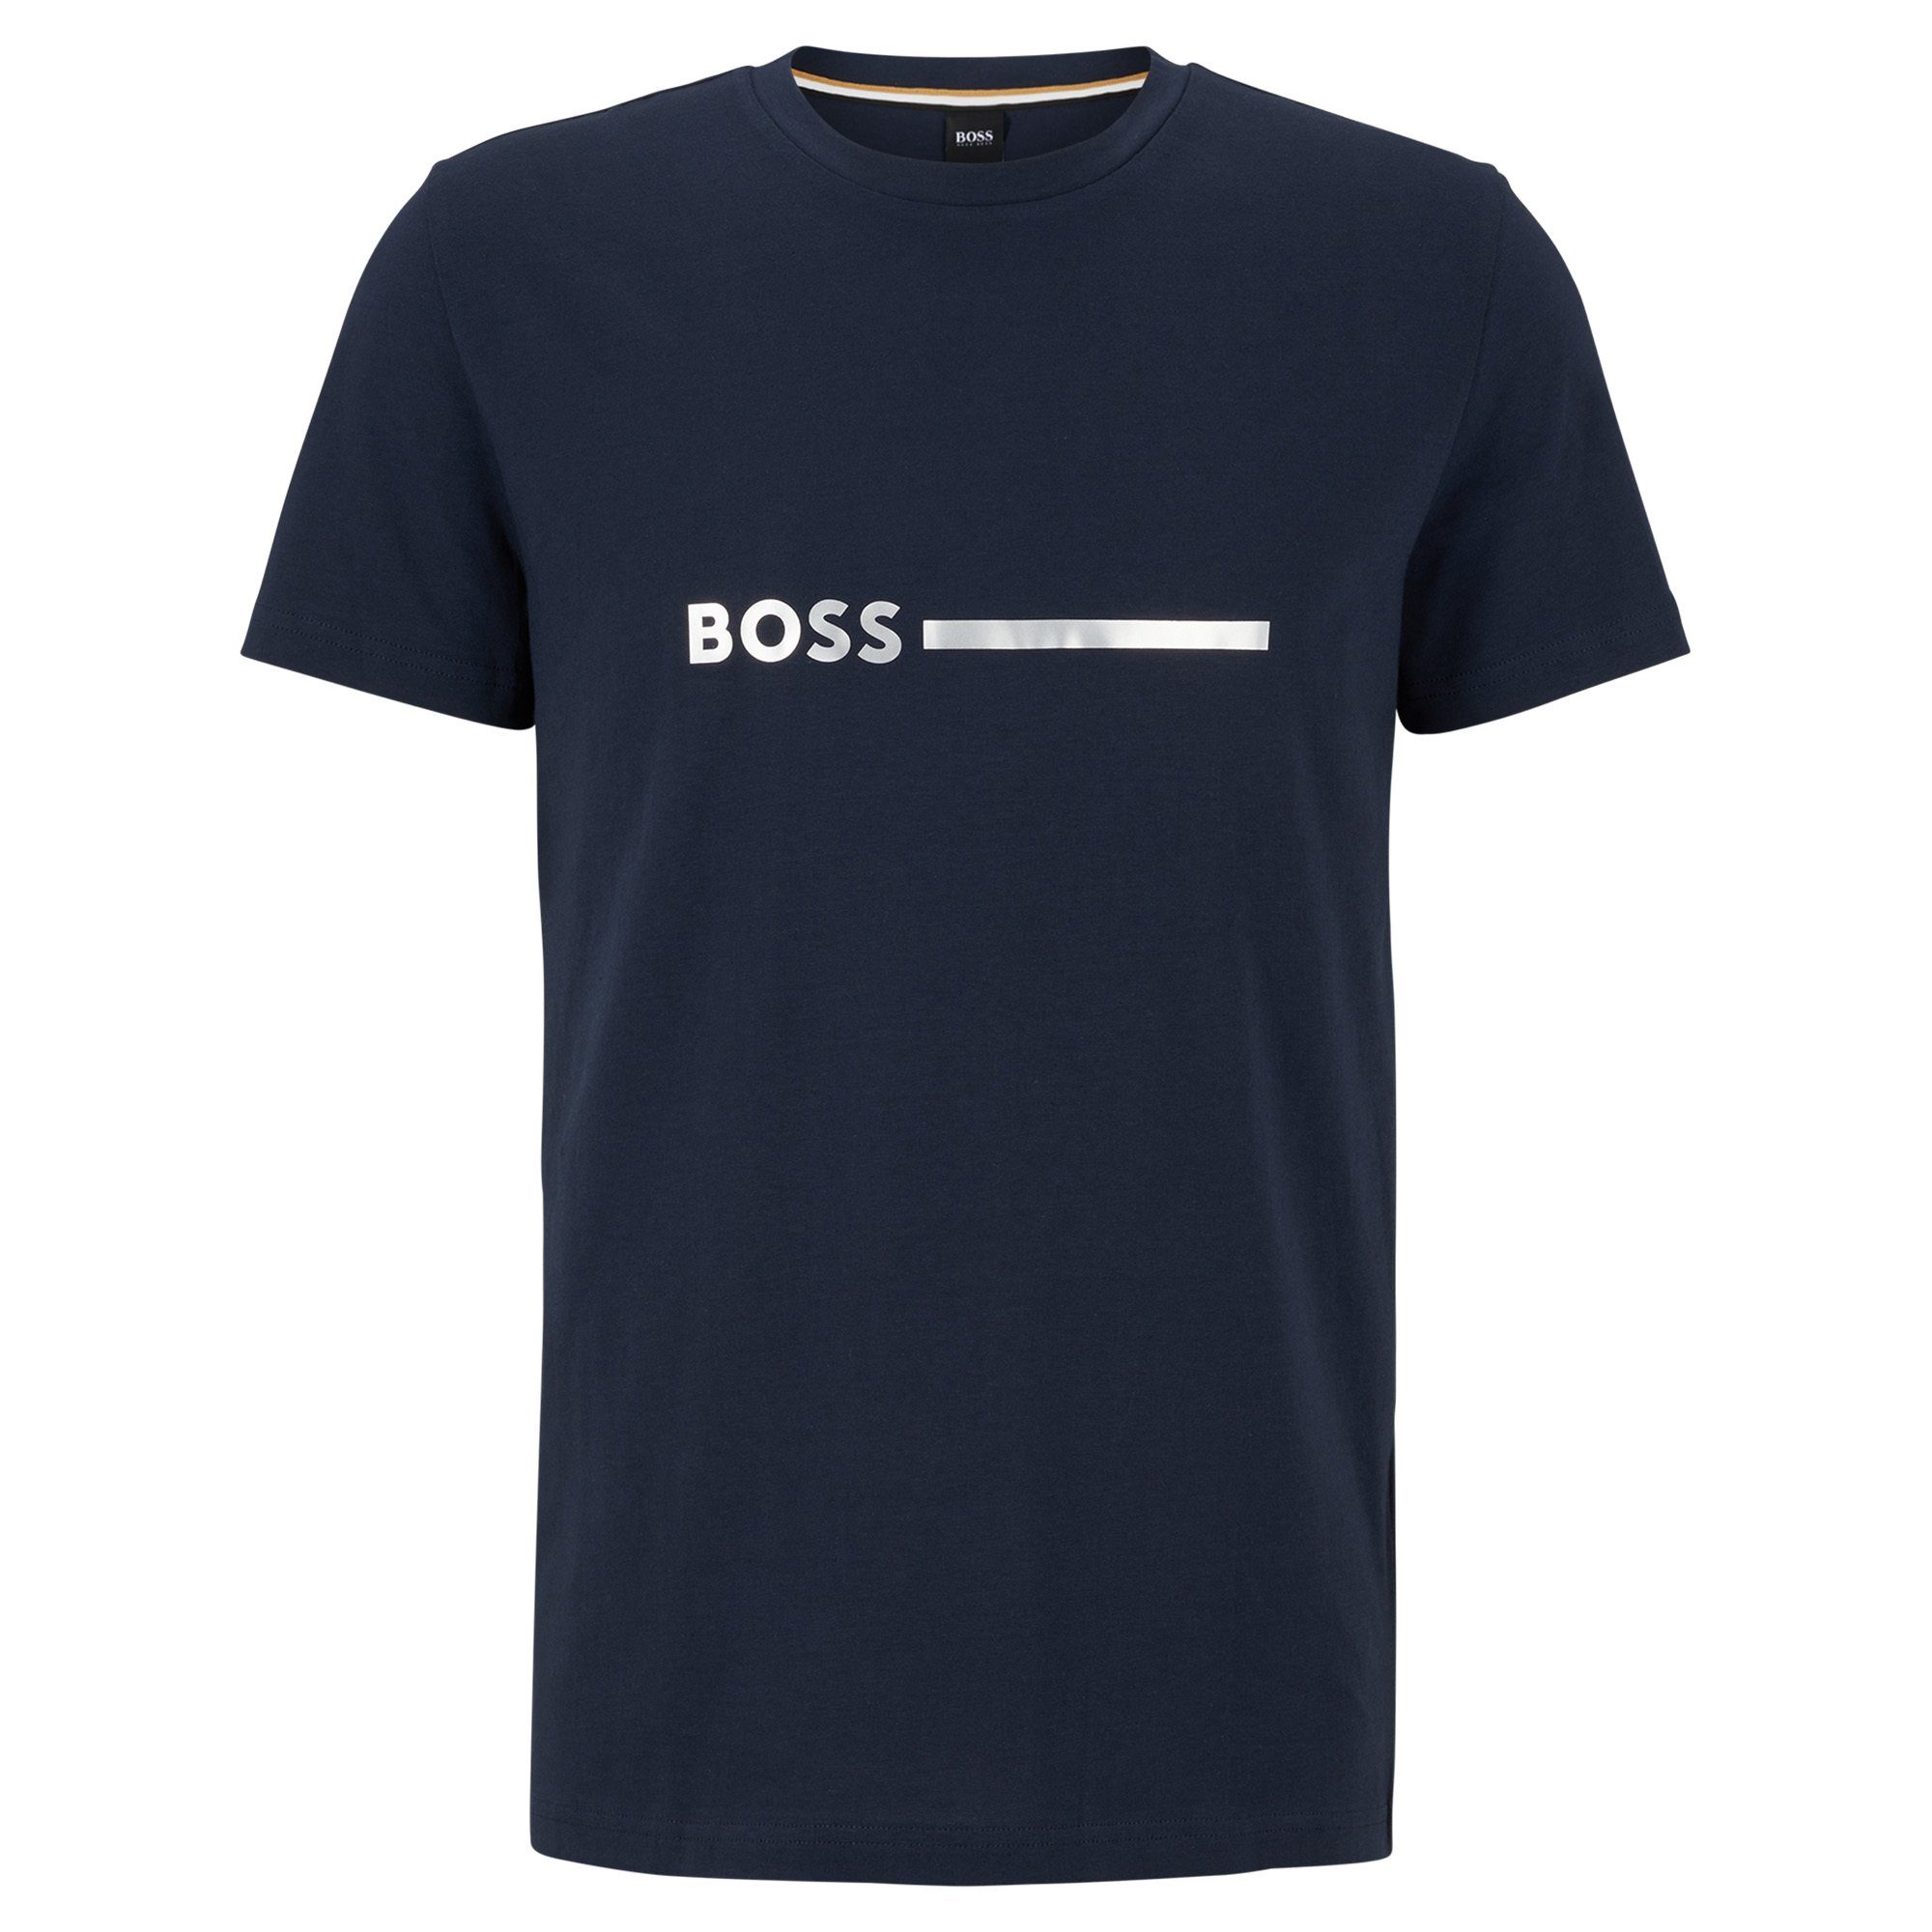 BOSS T-Shirt Herren T-Shirt - Special, Rundhals, Kurzarm Dunkelblau